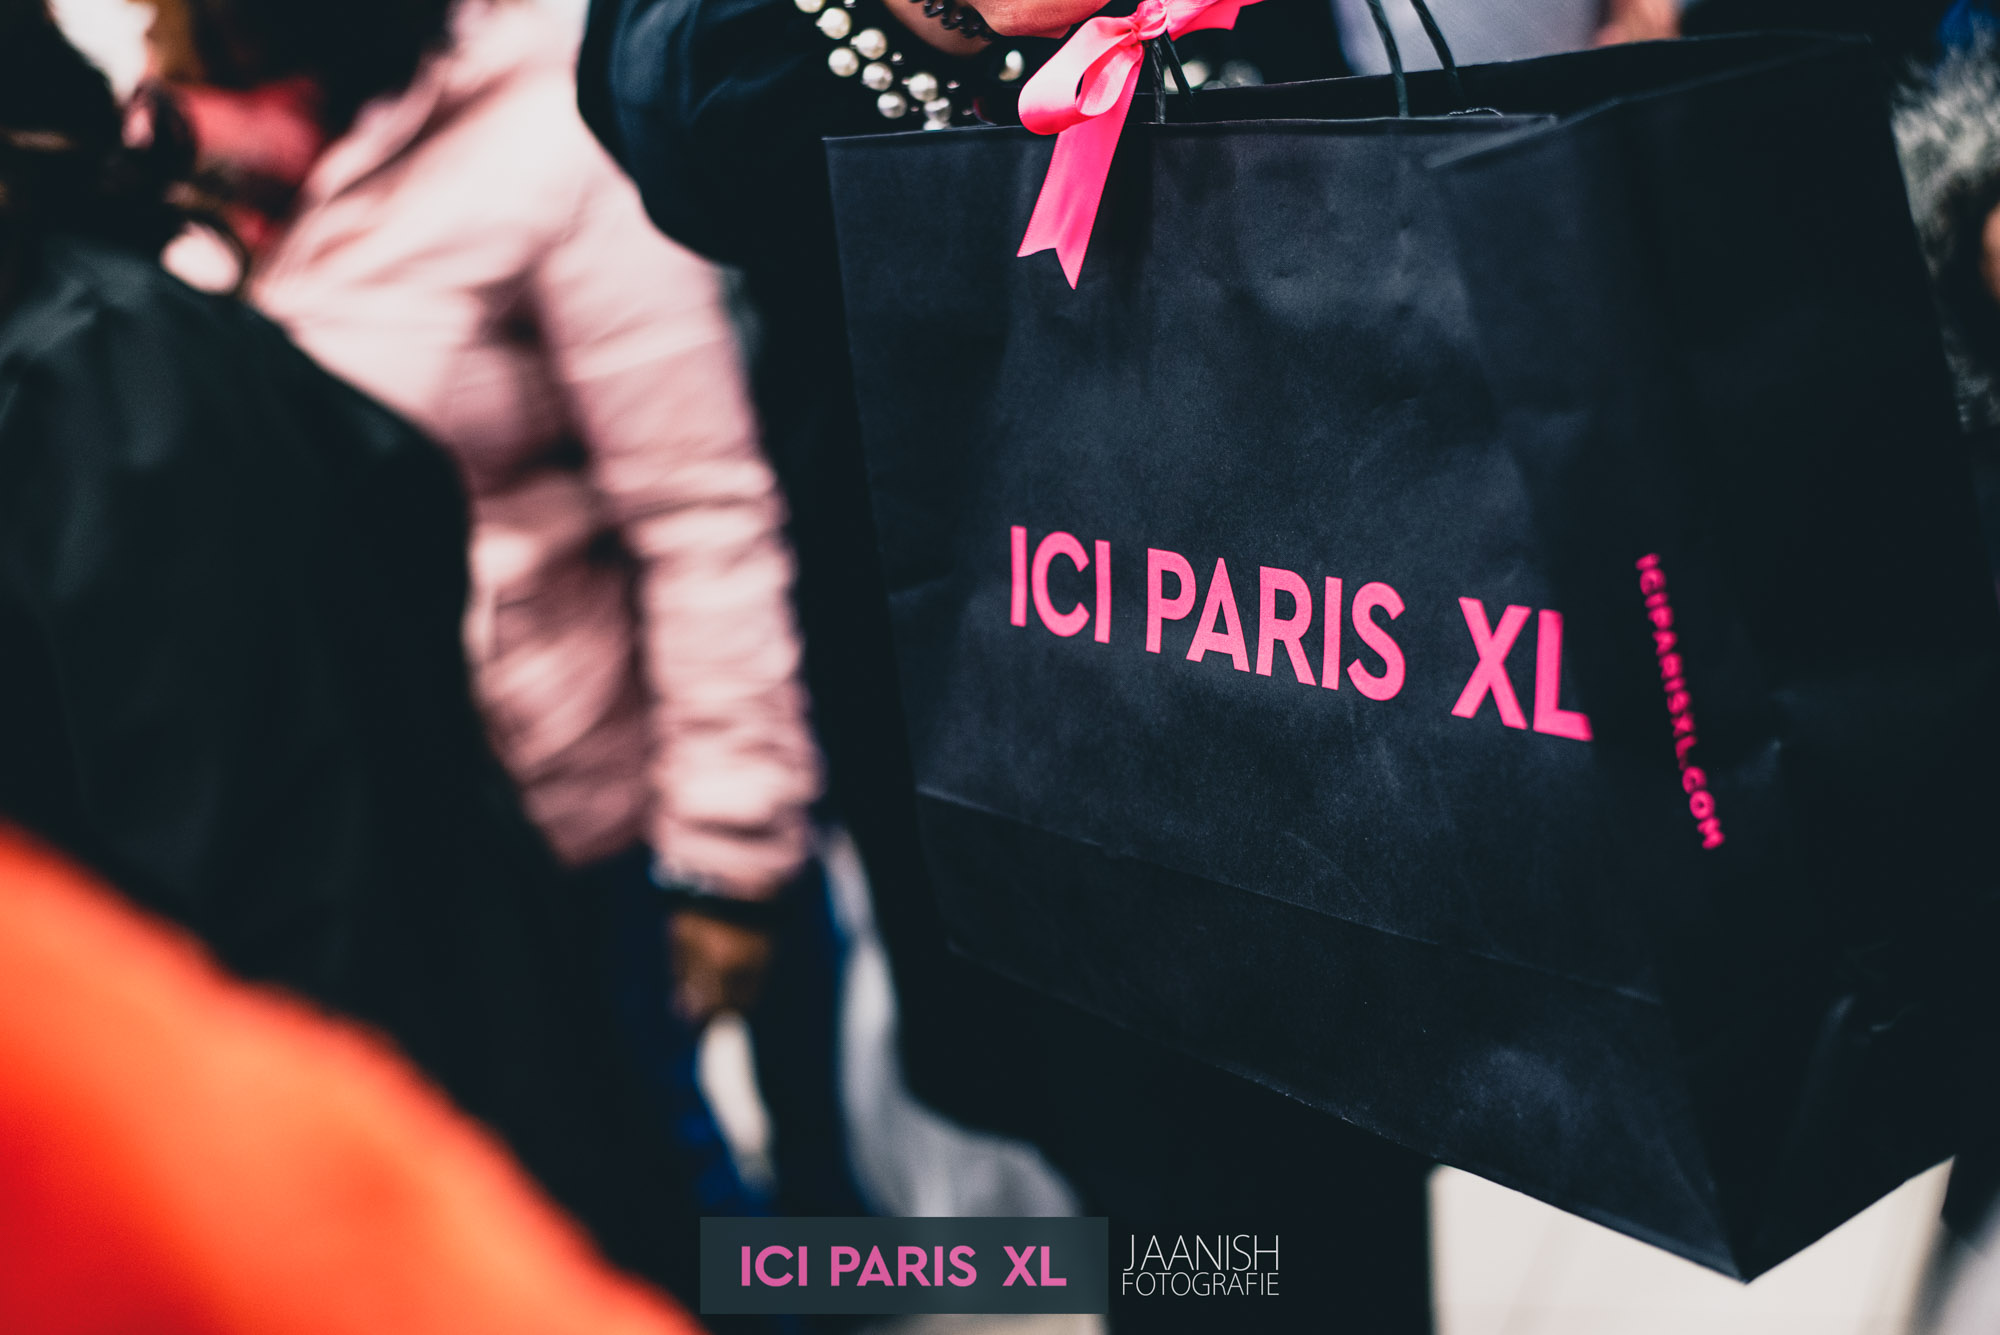 ICI Paris bedrijfsfeest evenement fotograaf in den haag 66